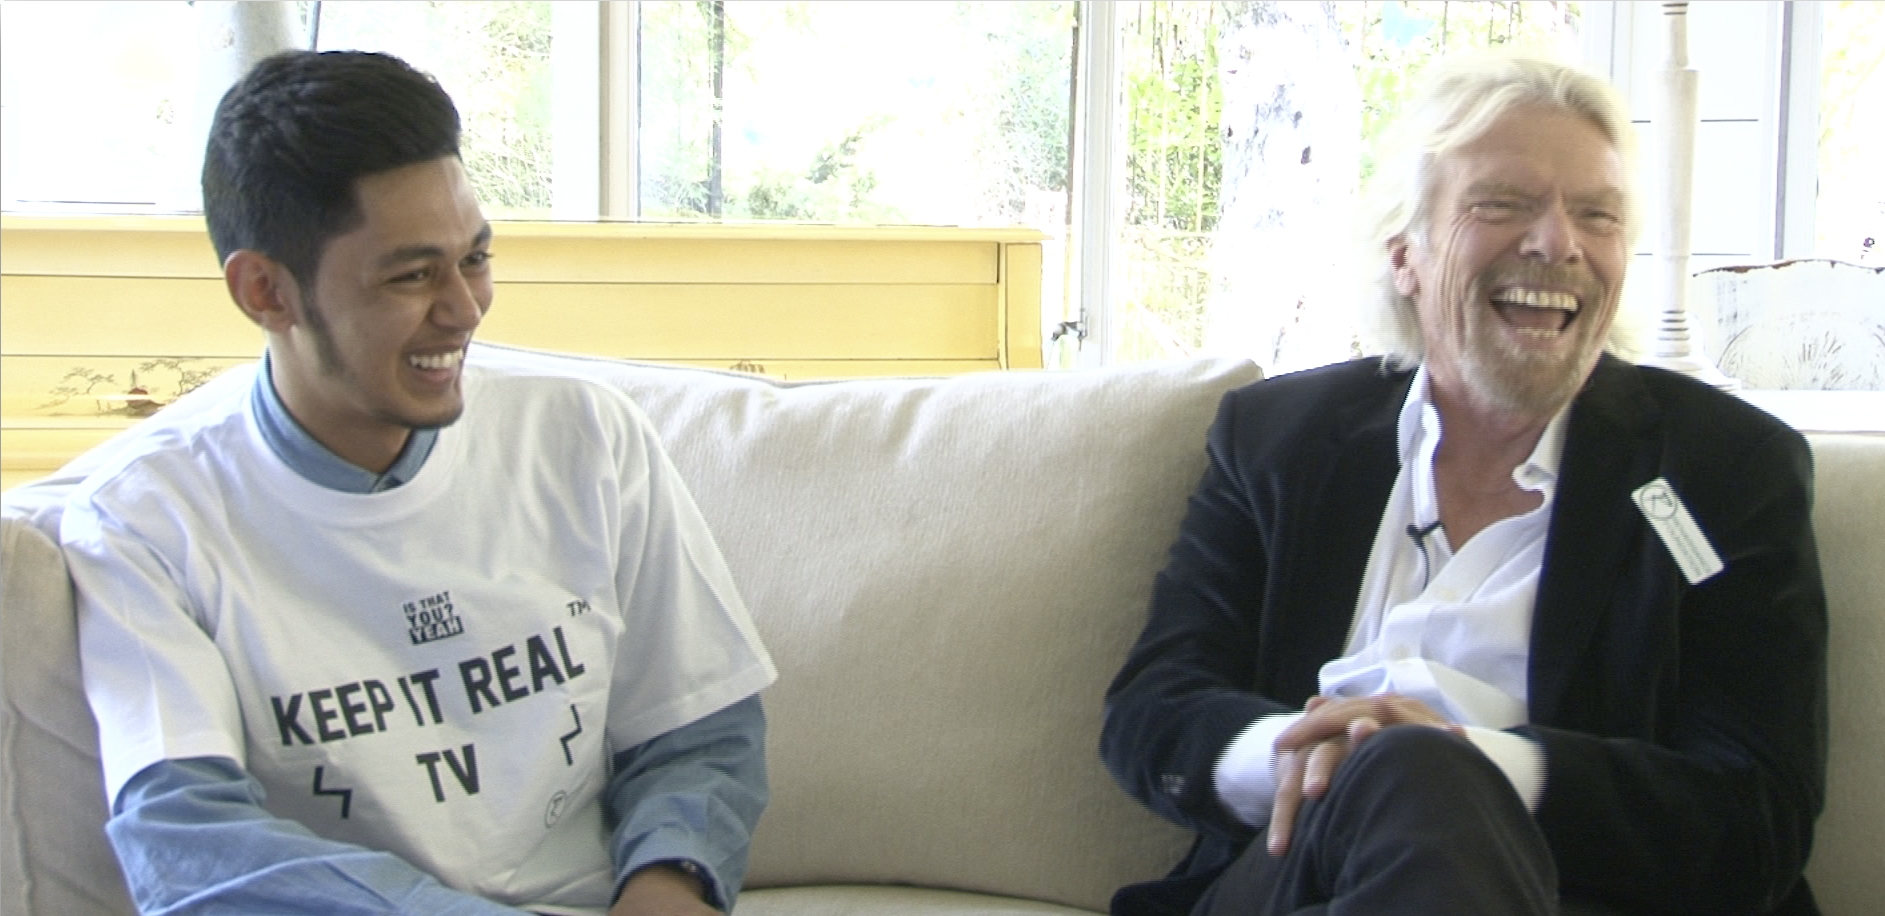 Sir Richard Brans talks to us on KEEP IT REAL TV